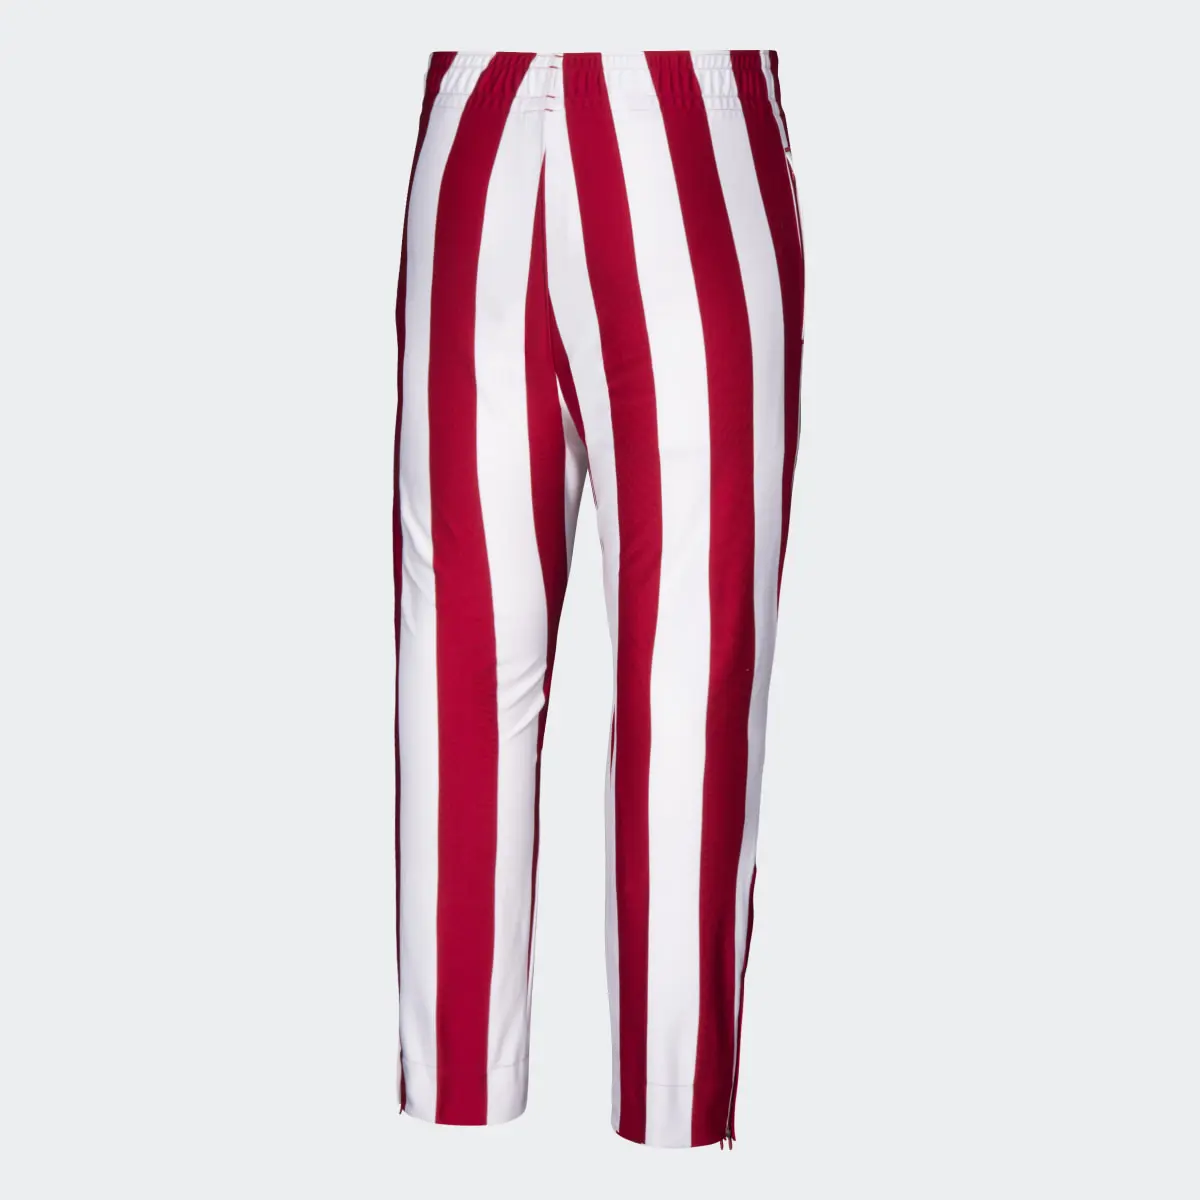 Adidas Hoosiers Candy-Stripe Pants. 2